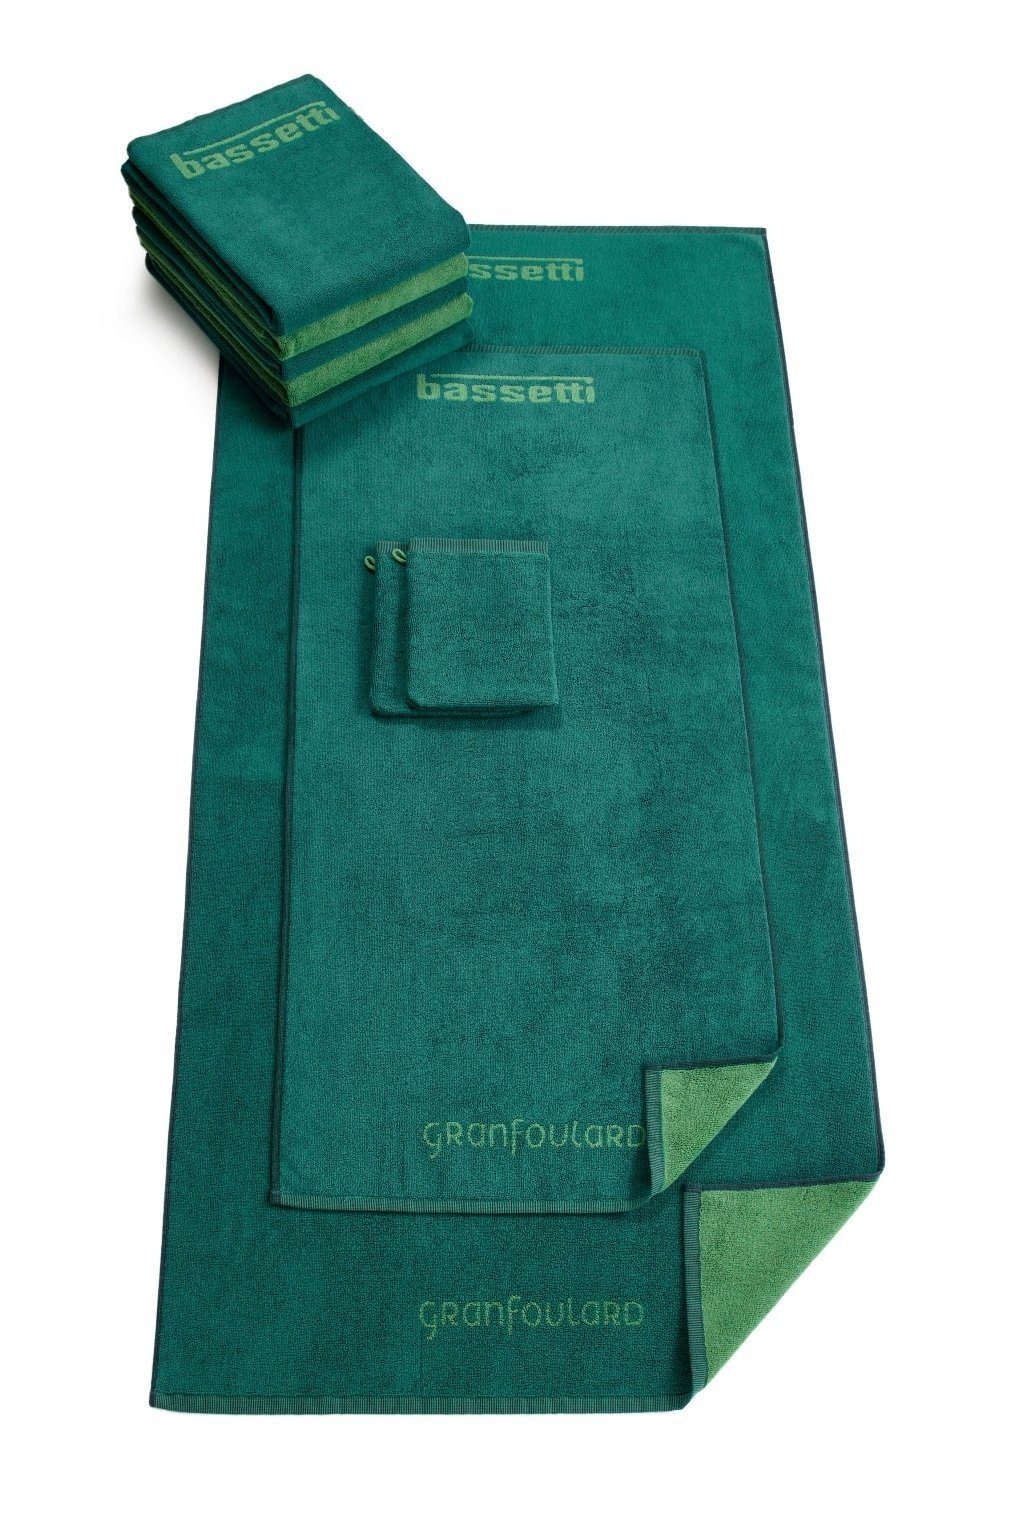 Wendedesign Bassetti SHADES, grün Duschtücher mit